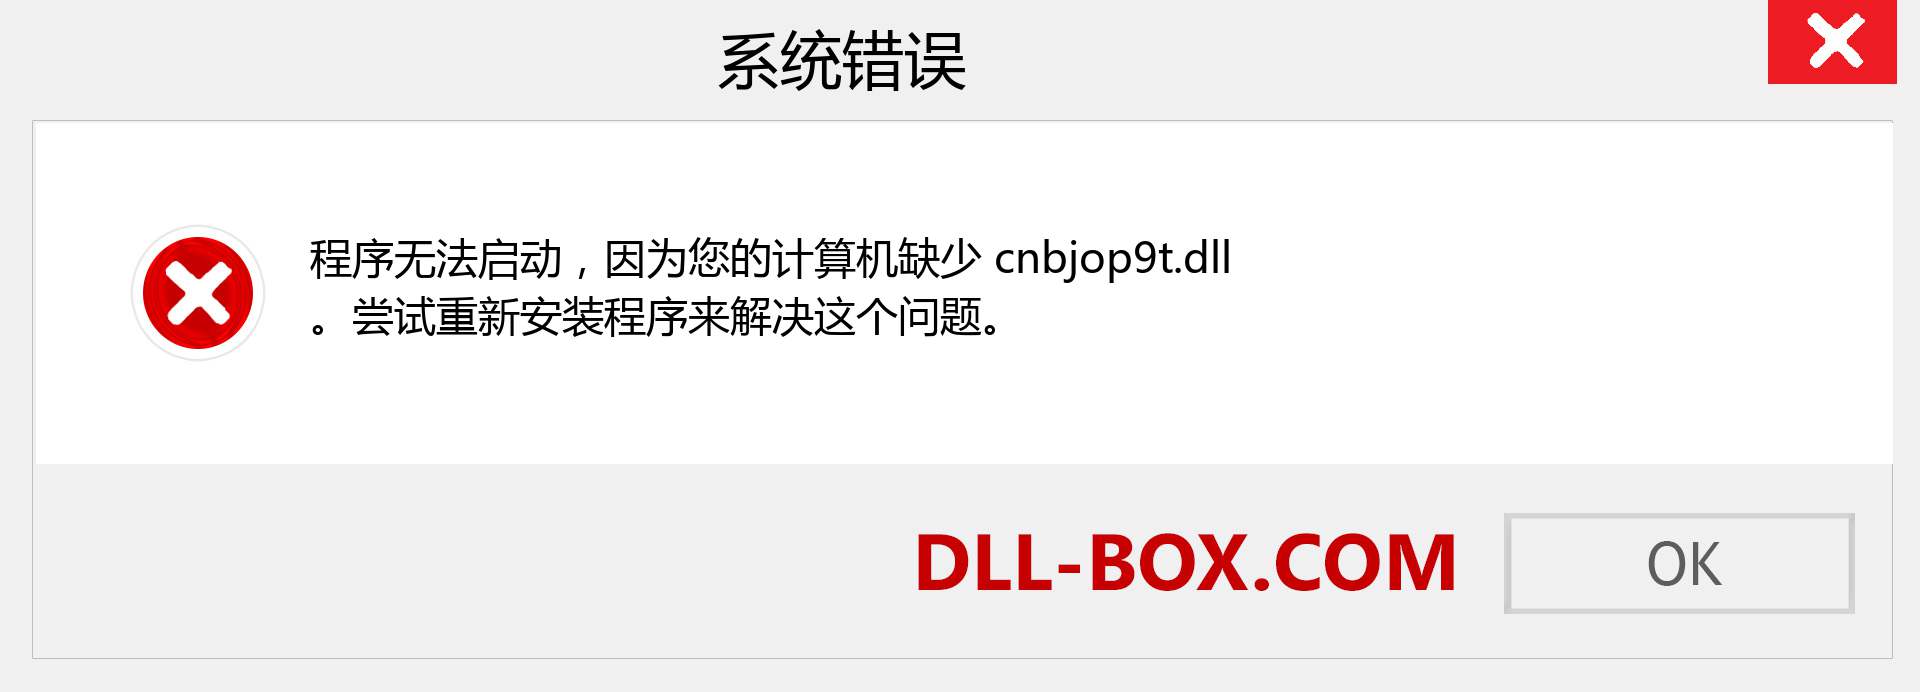 cnbjop9t.dll 文件丢失？。 适用于 Windows 7、8、10 的下载 - 修复 Windows、照片、图像上的 cnbjop9t dll 丢失错误